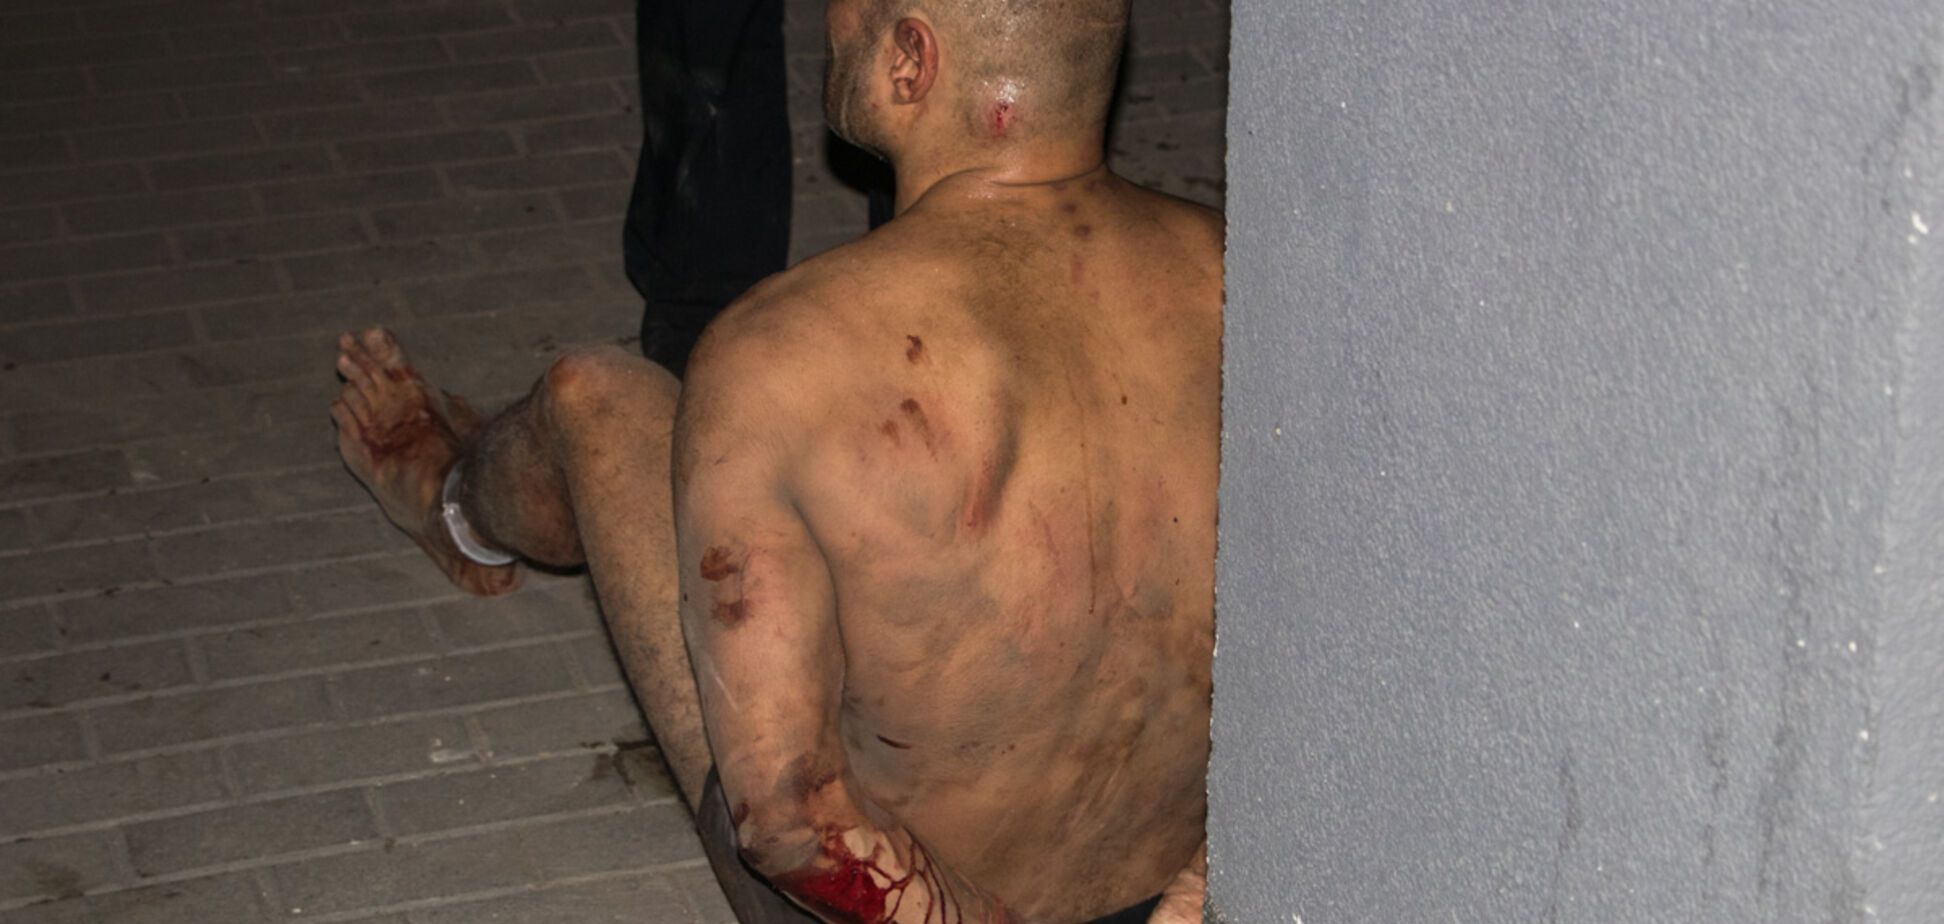 Закривавлений чоловік у трусах налякав жителів Києва